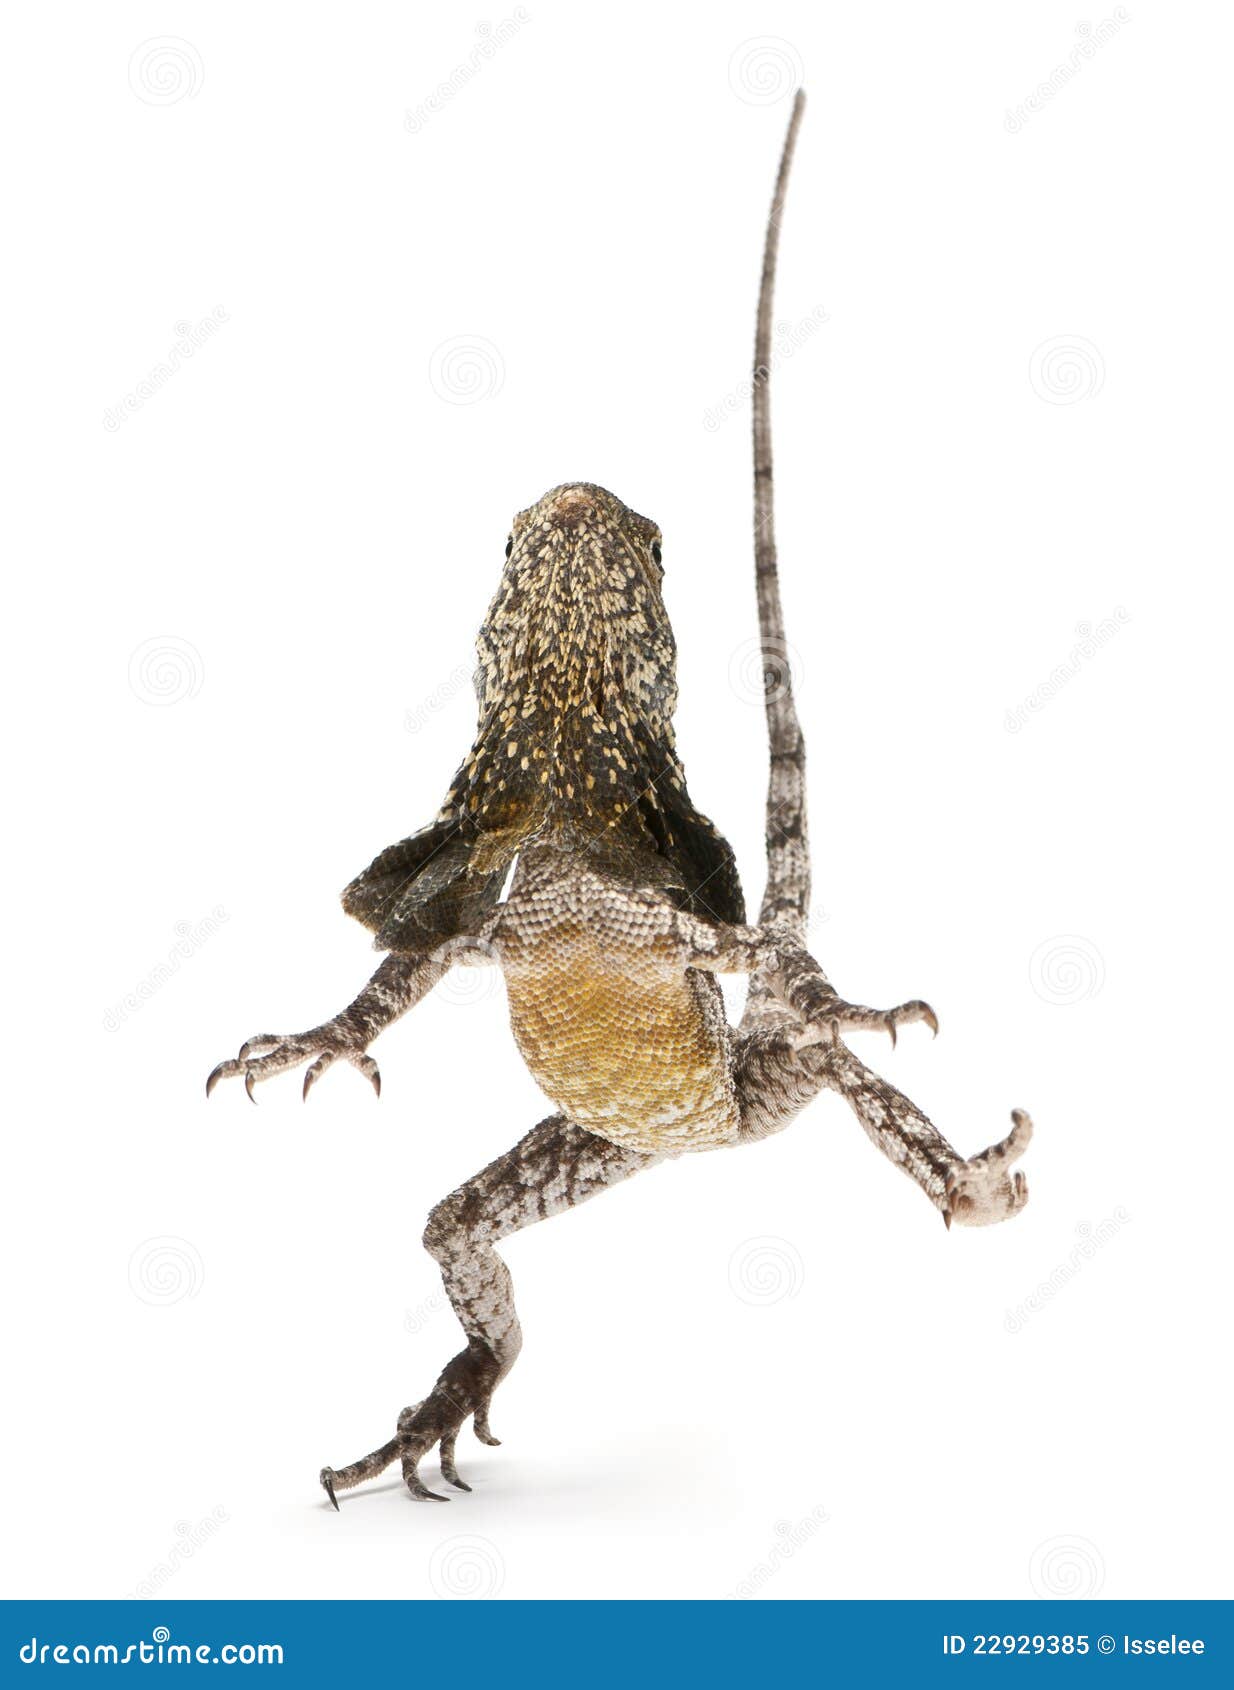 frilled lizard running